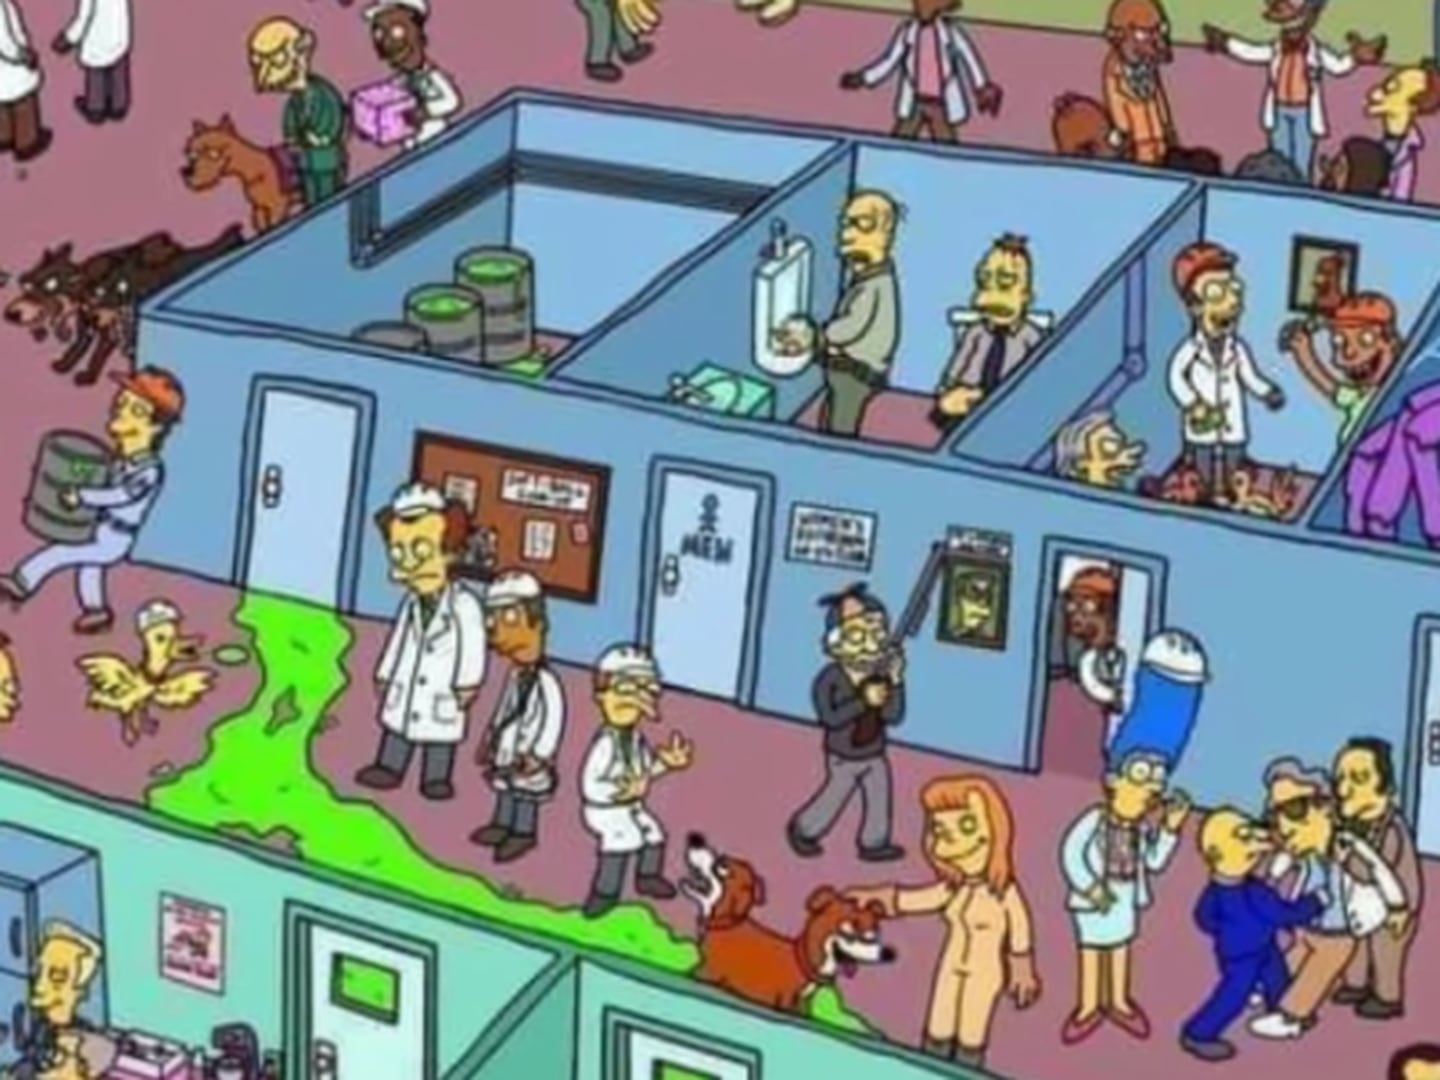 Os Simpsons': você consegue encontrar os 7 erros escondidos nestas imagens?  – Metro World News Brasil